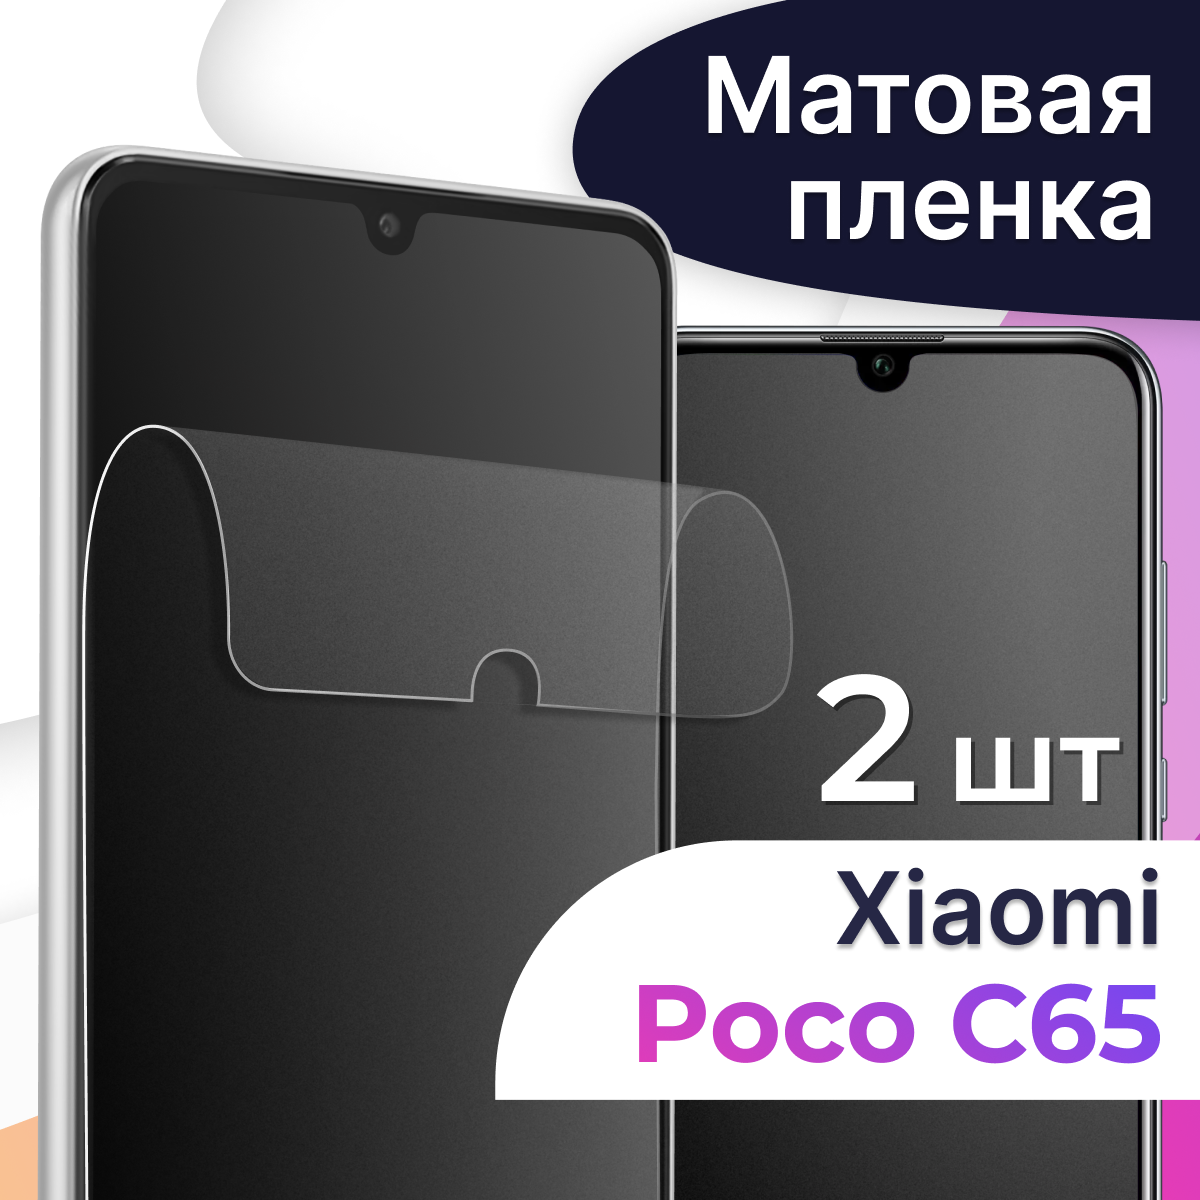 Матовая пленка на телефон Poco C65 / Гидрогелевая противоударная пленка для смартфона Поко С65 / Защитная пленка